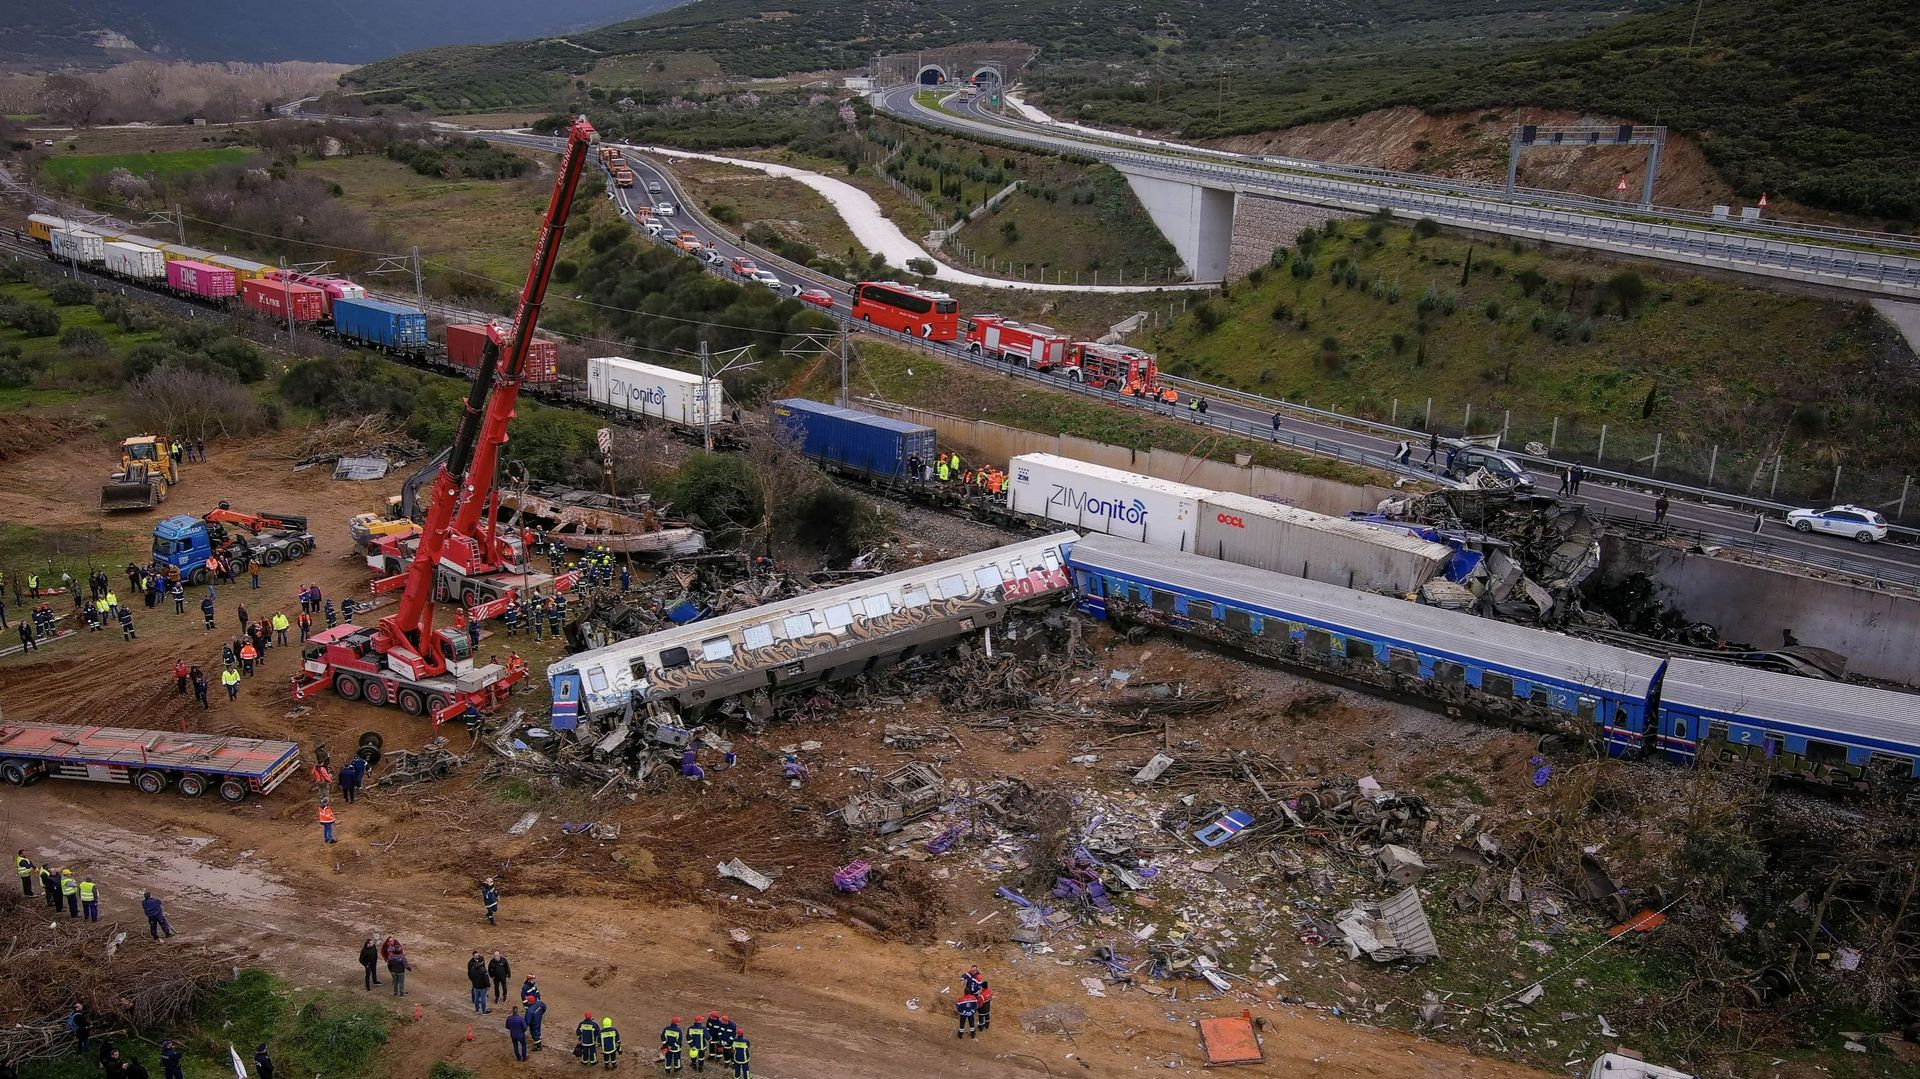 Scontro frontale di due treni in Grecia: un nuovo rapporto mostra almeno 42 morti e decine di feriti